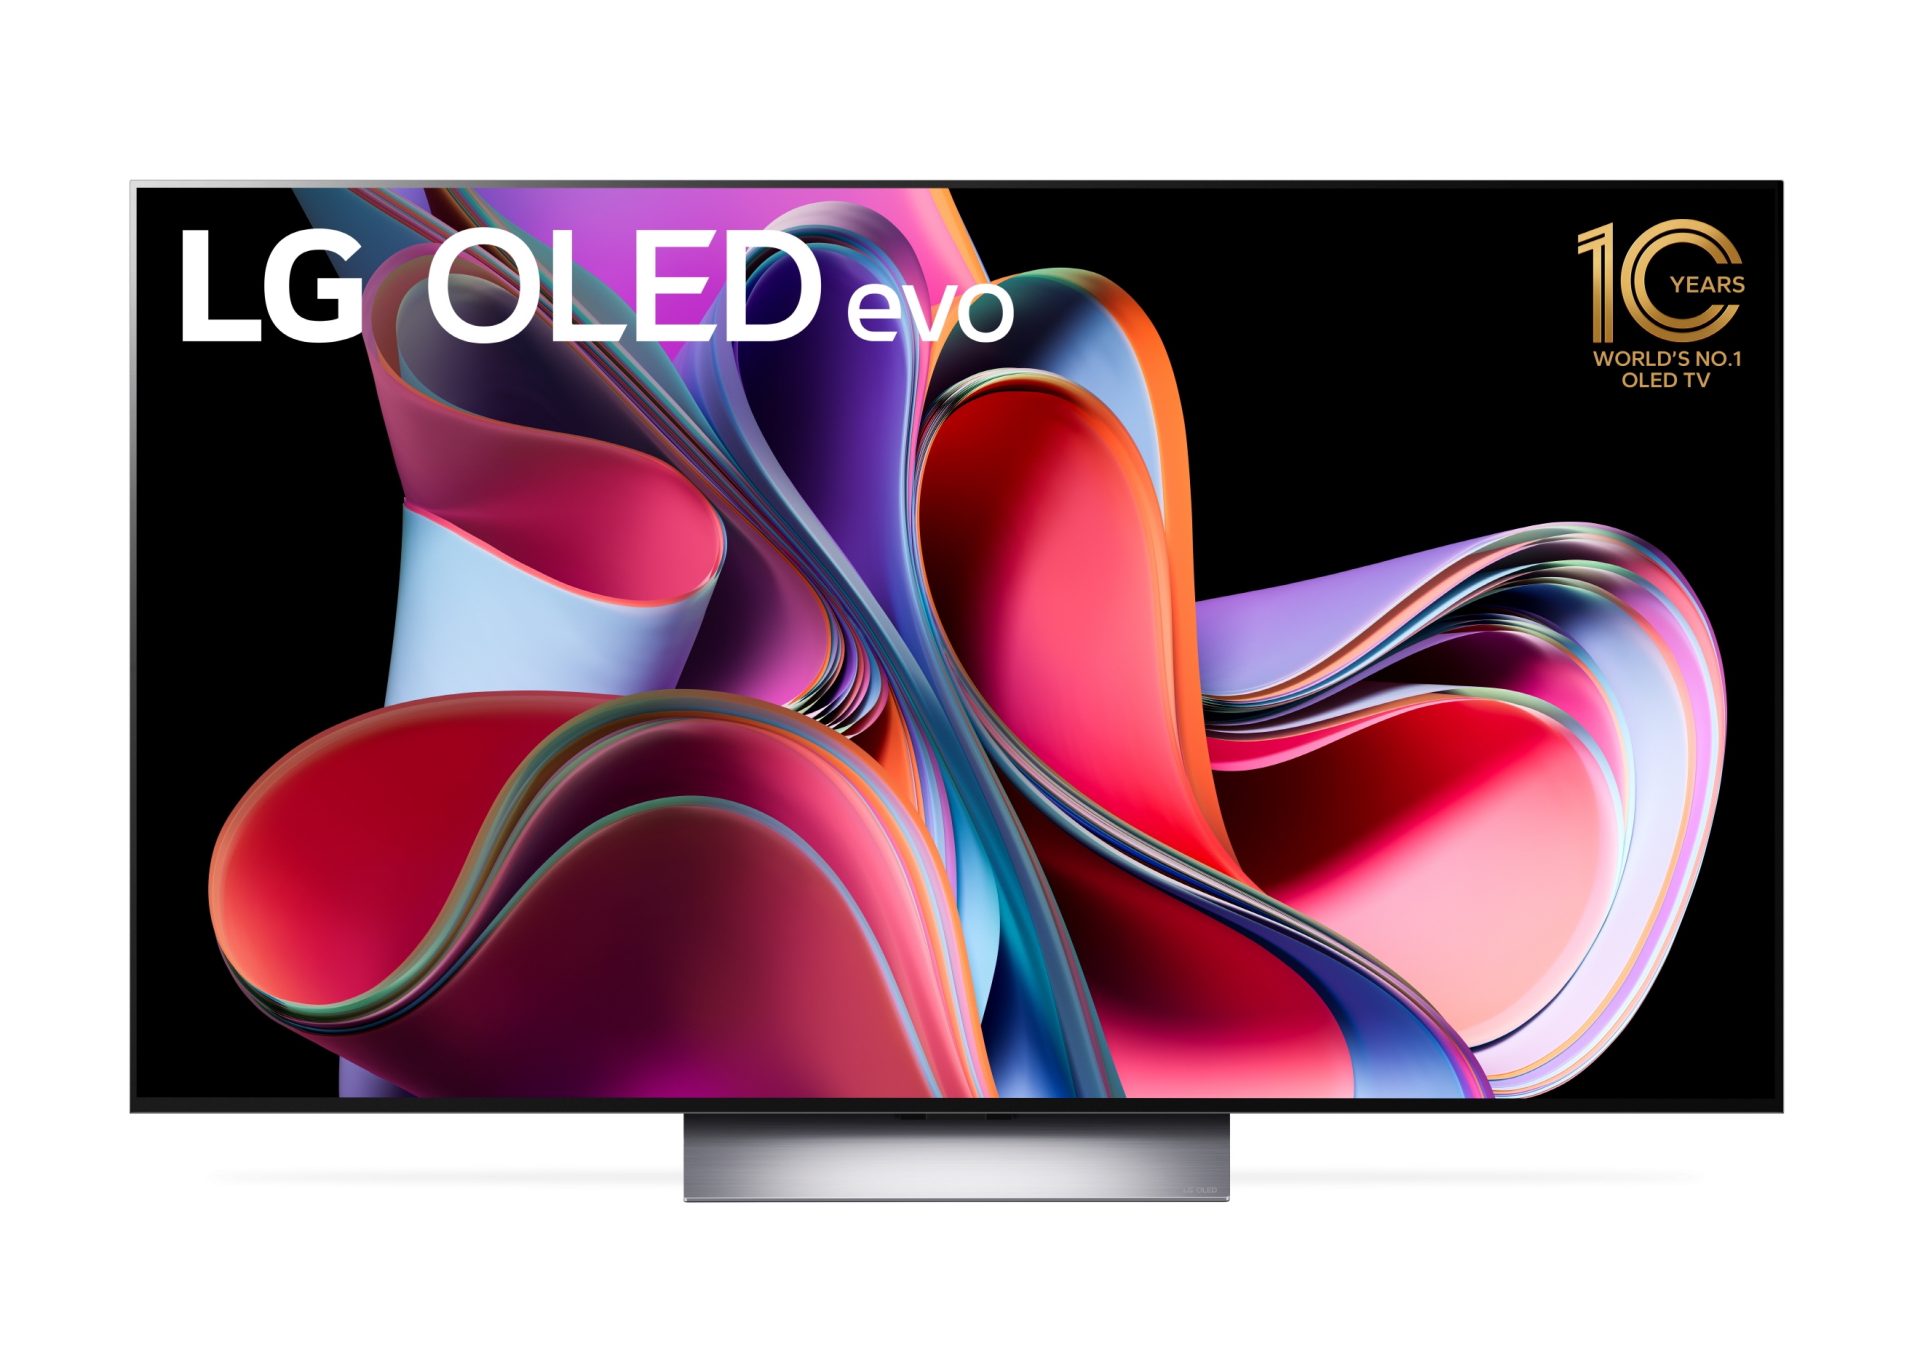 LG evo OLED TV